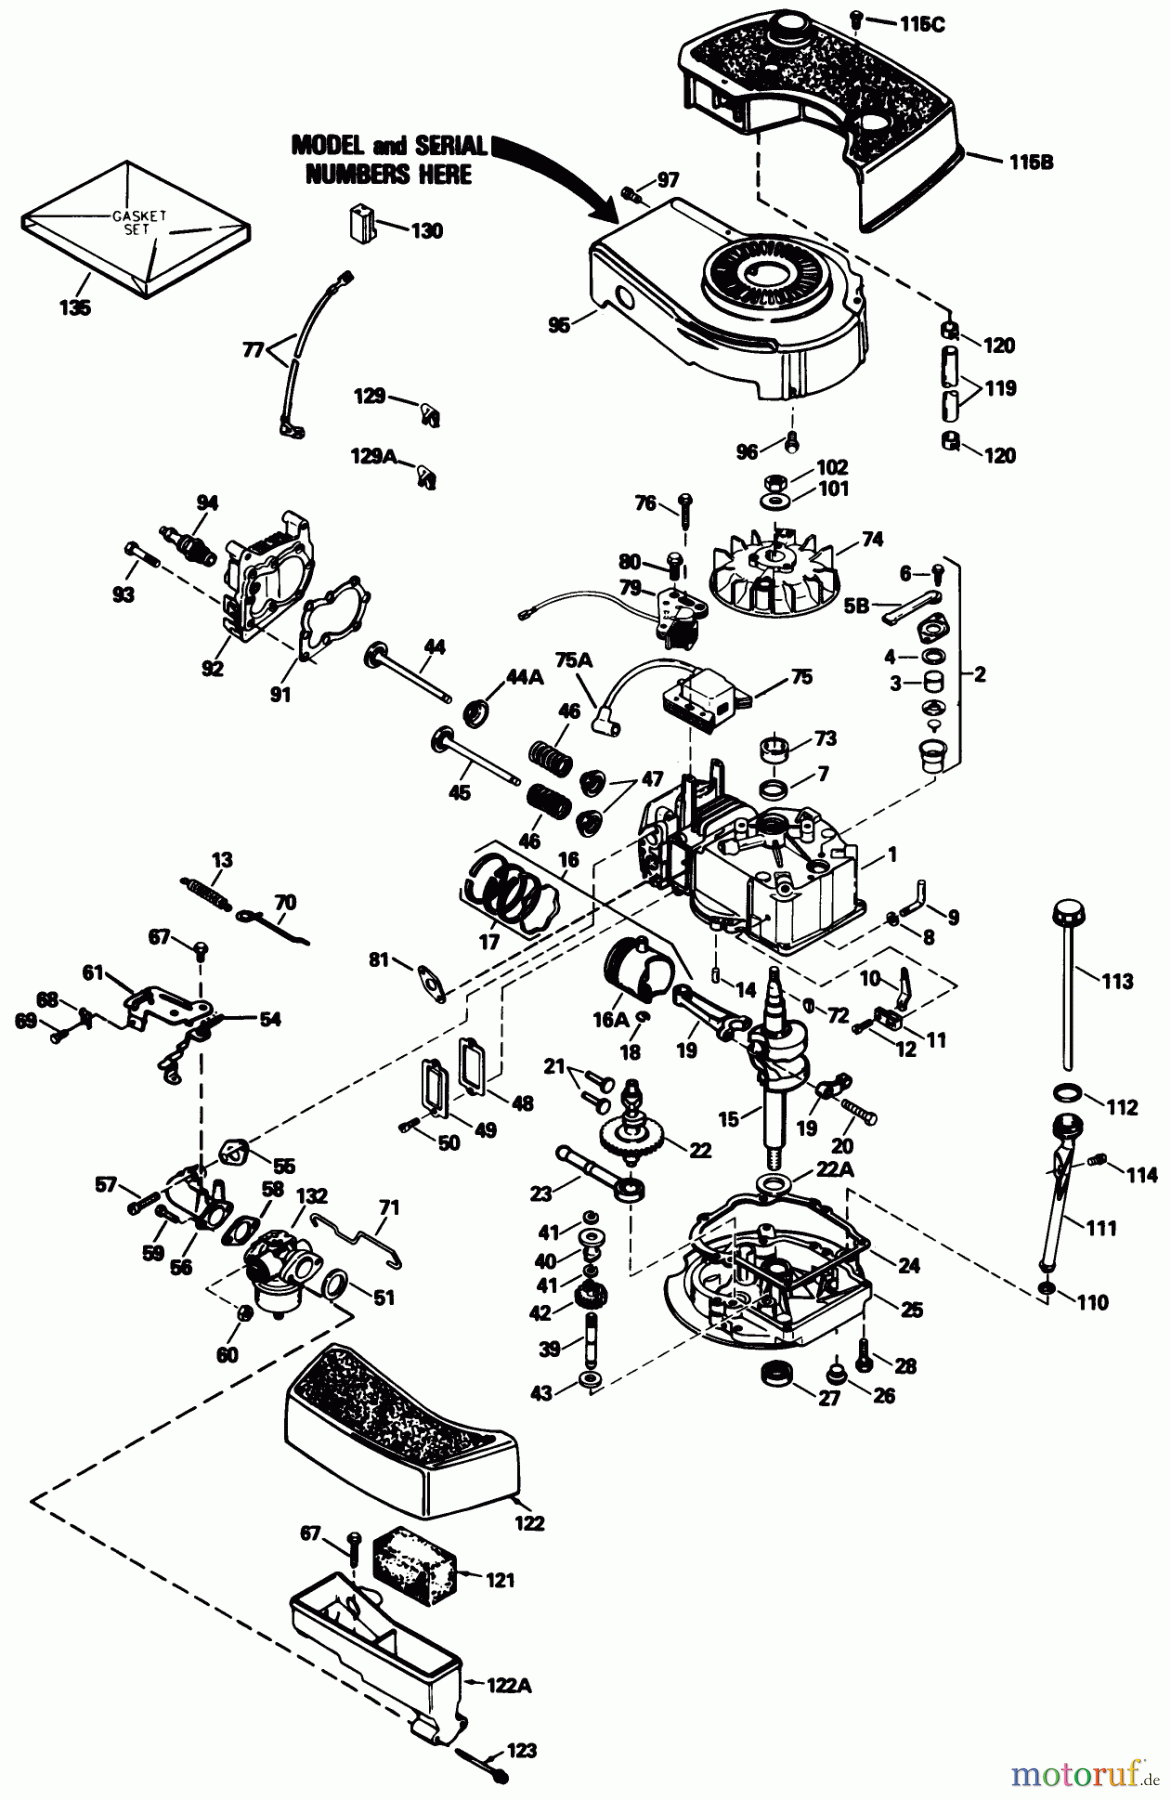  Toro Neu Mowers, Walk-Behind Seite 1 20671 - Toro Lawnmower, 1989 (9000001-9999999) ENGINE MODEL NO. TNT 100-10104F